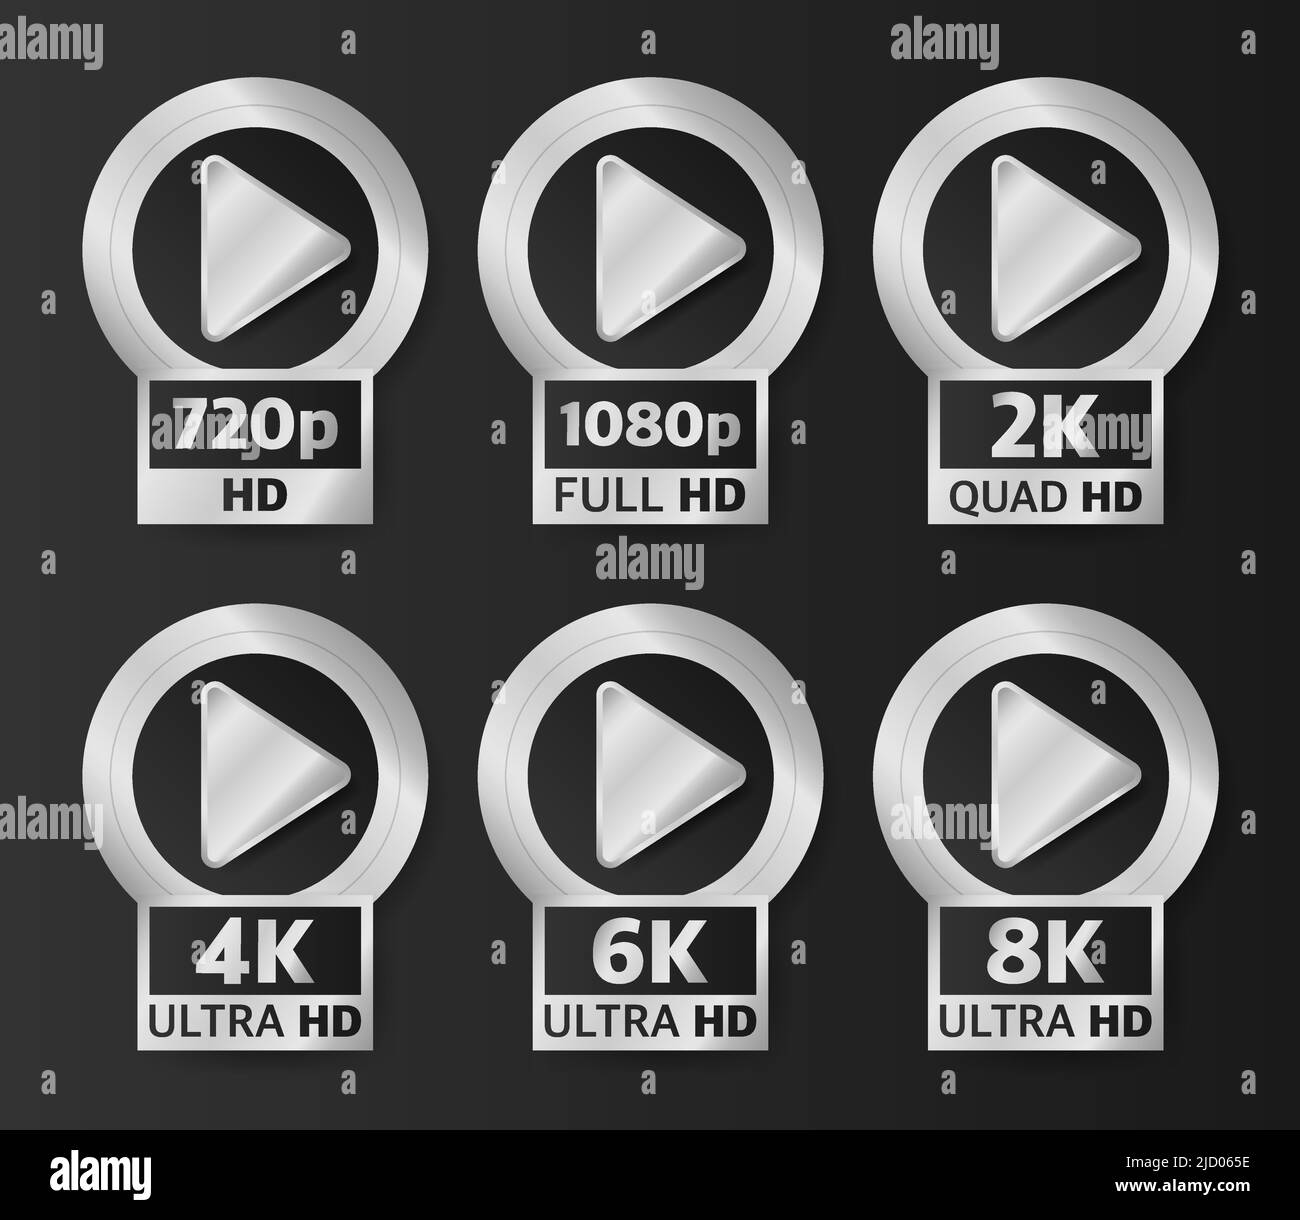 Badges de qualité vidéo de couleur argent sur fond noir. HD, Full HD, 2K, 4K, 6K et 8K. Illustration vectorielle. Illustration de Vecteur